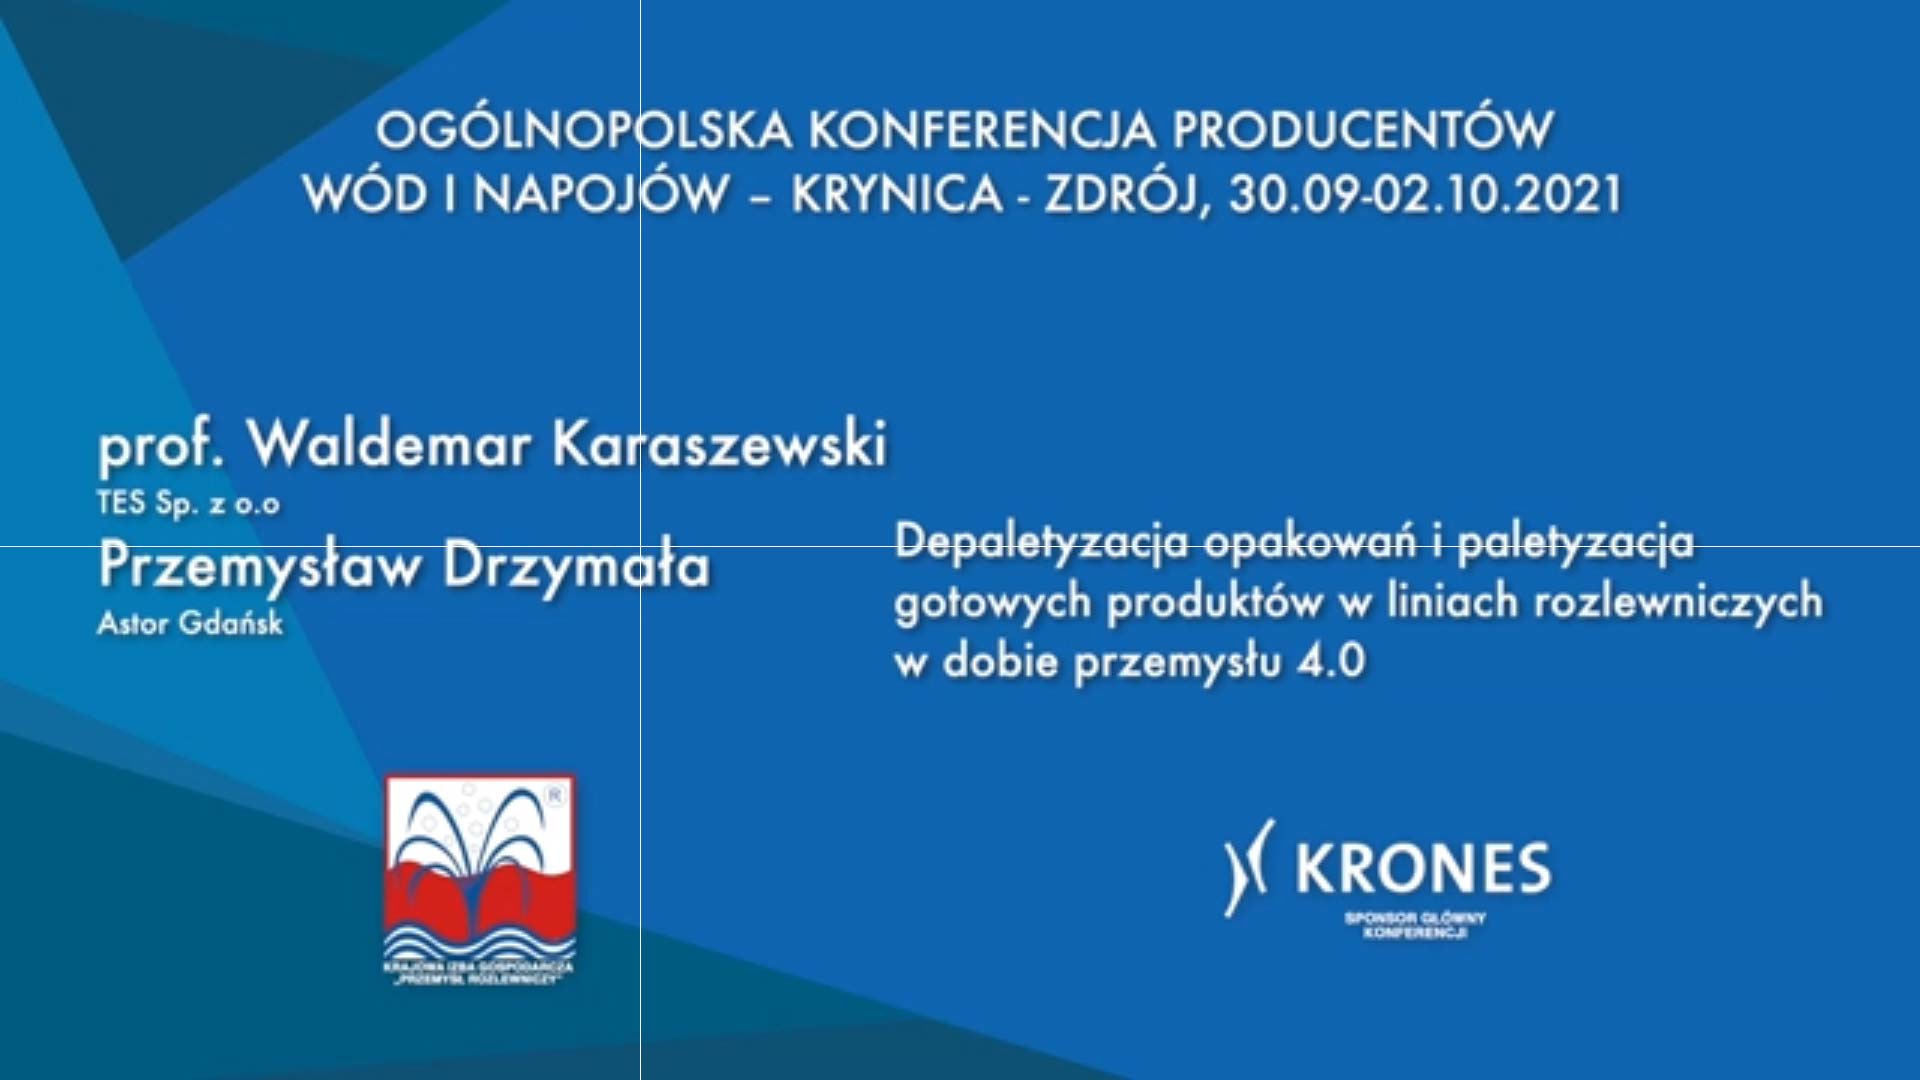 Prof. WALDEMAR KARASZEWSKI i PRZEMYSŁAW DRZYMAŁA: „Depaletyzacja opakowań i paletyzacja gotowych produktów w liniach rozlewniczych w dobie przemysłu 4.0.”